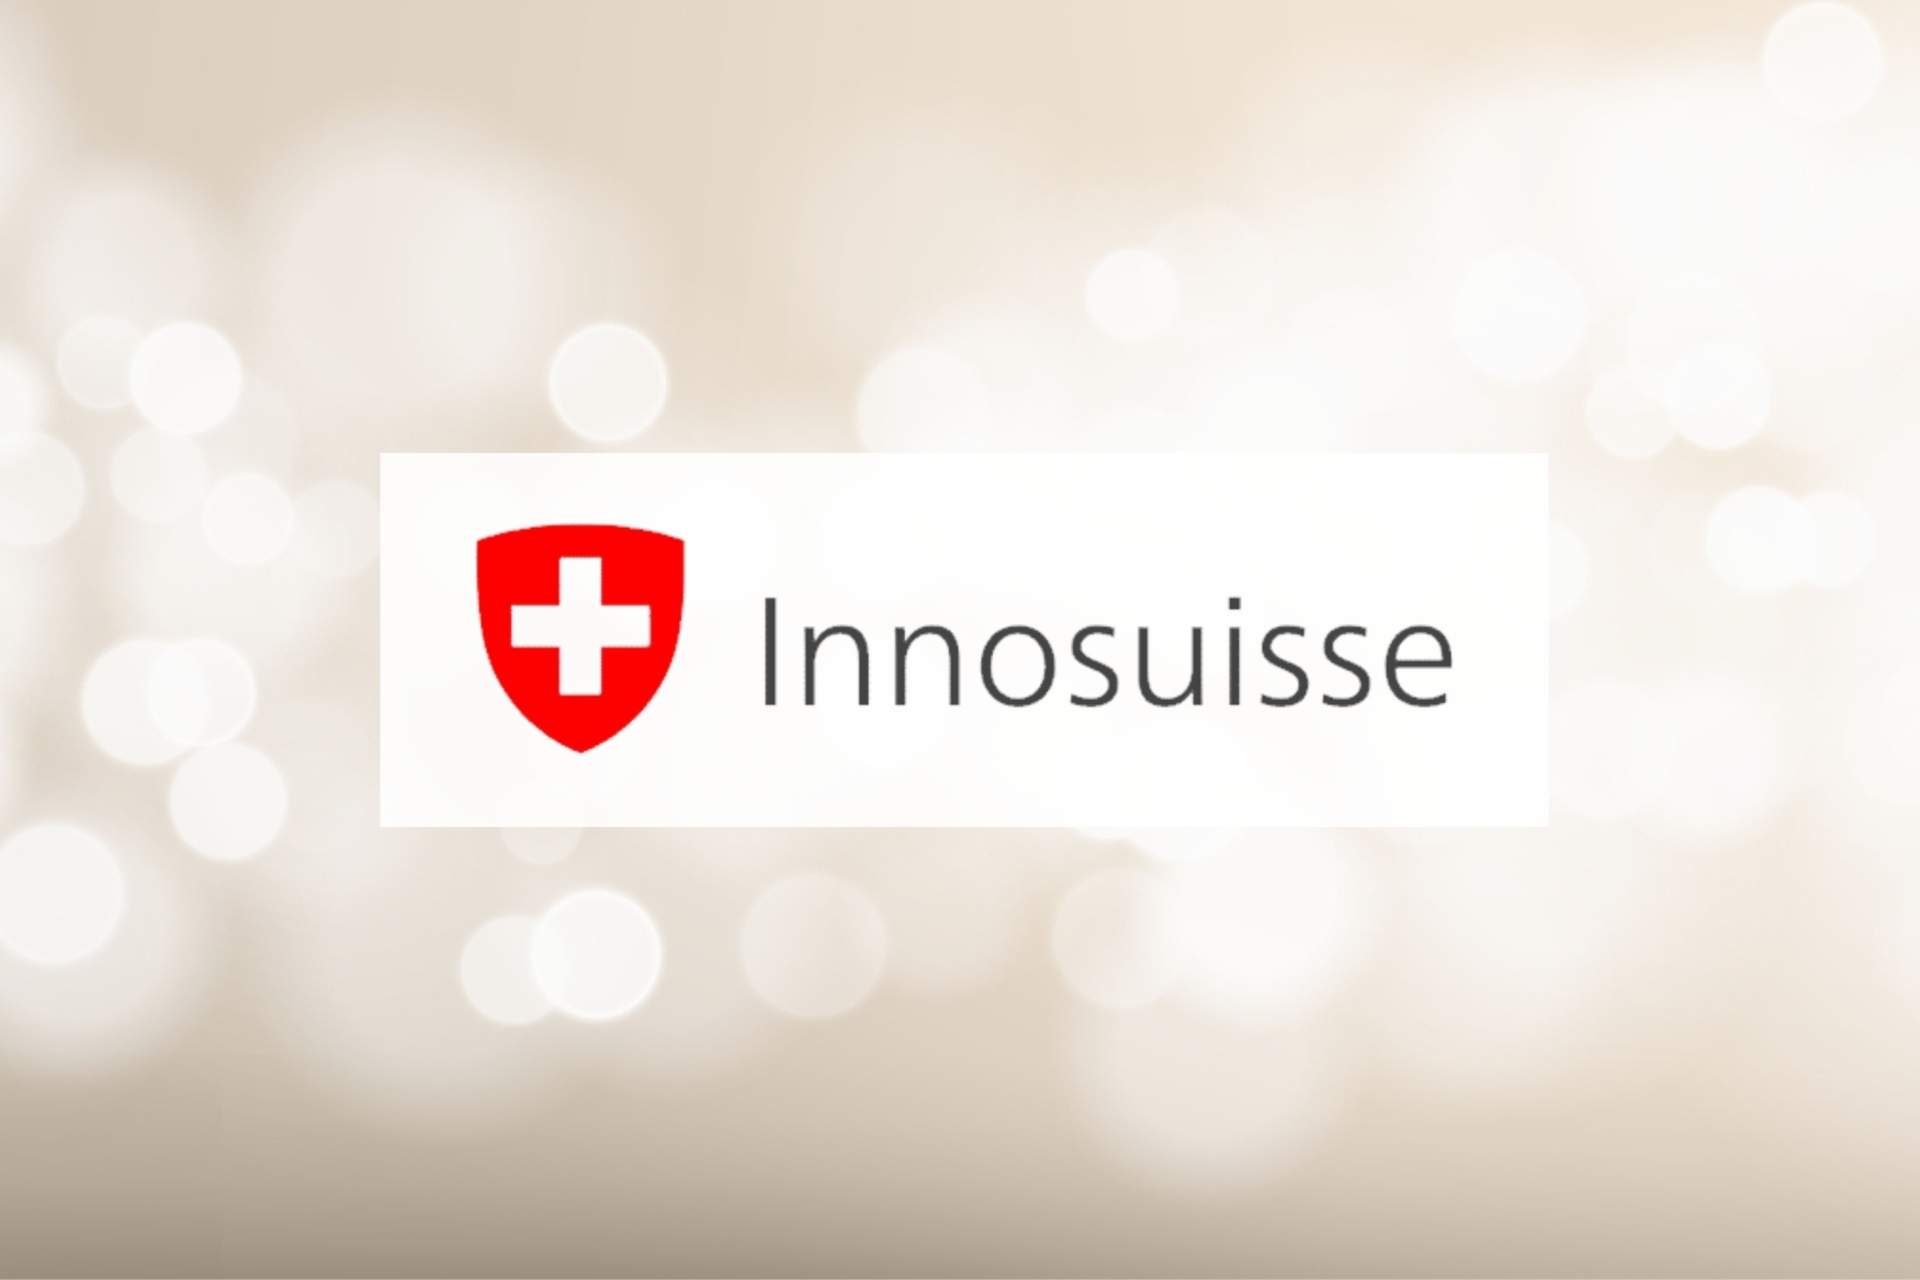 Innosuisse: Agenzia Svizzera per la Promozione dell’Innovazione